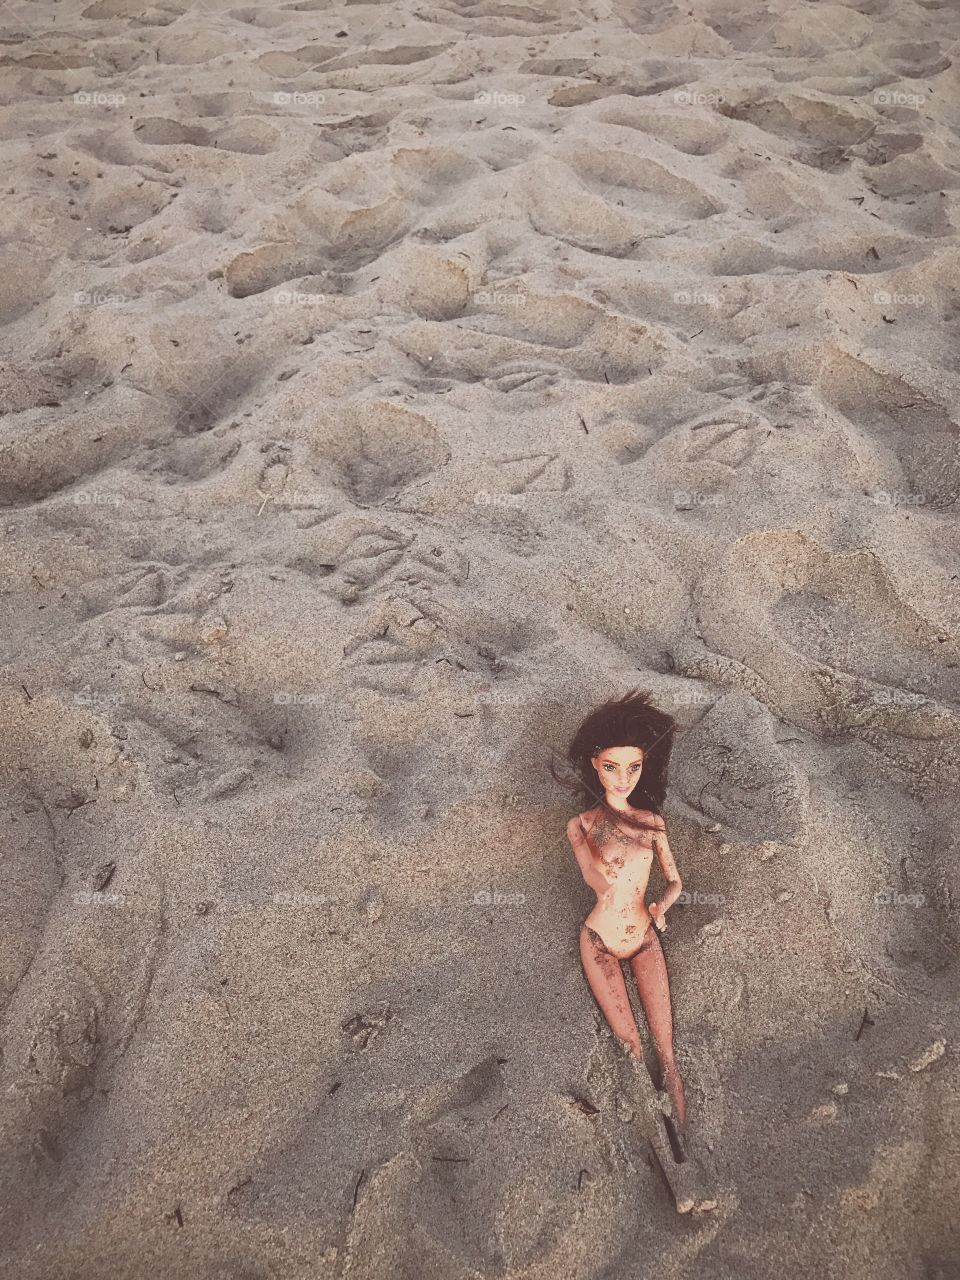 Beach Barbie